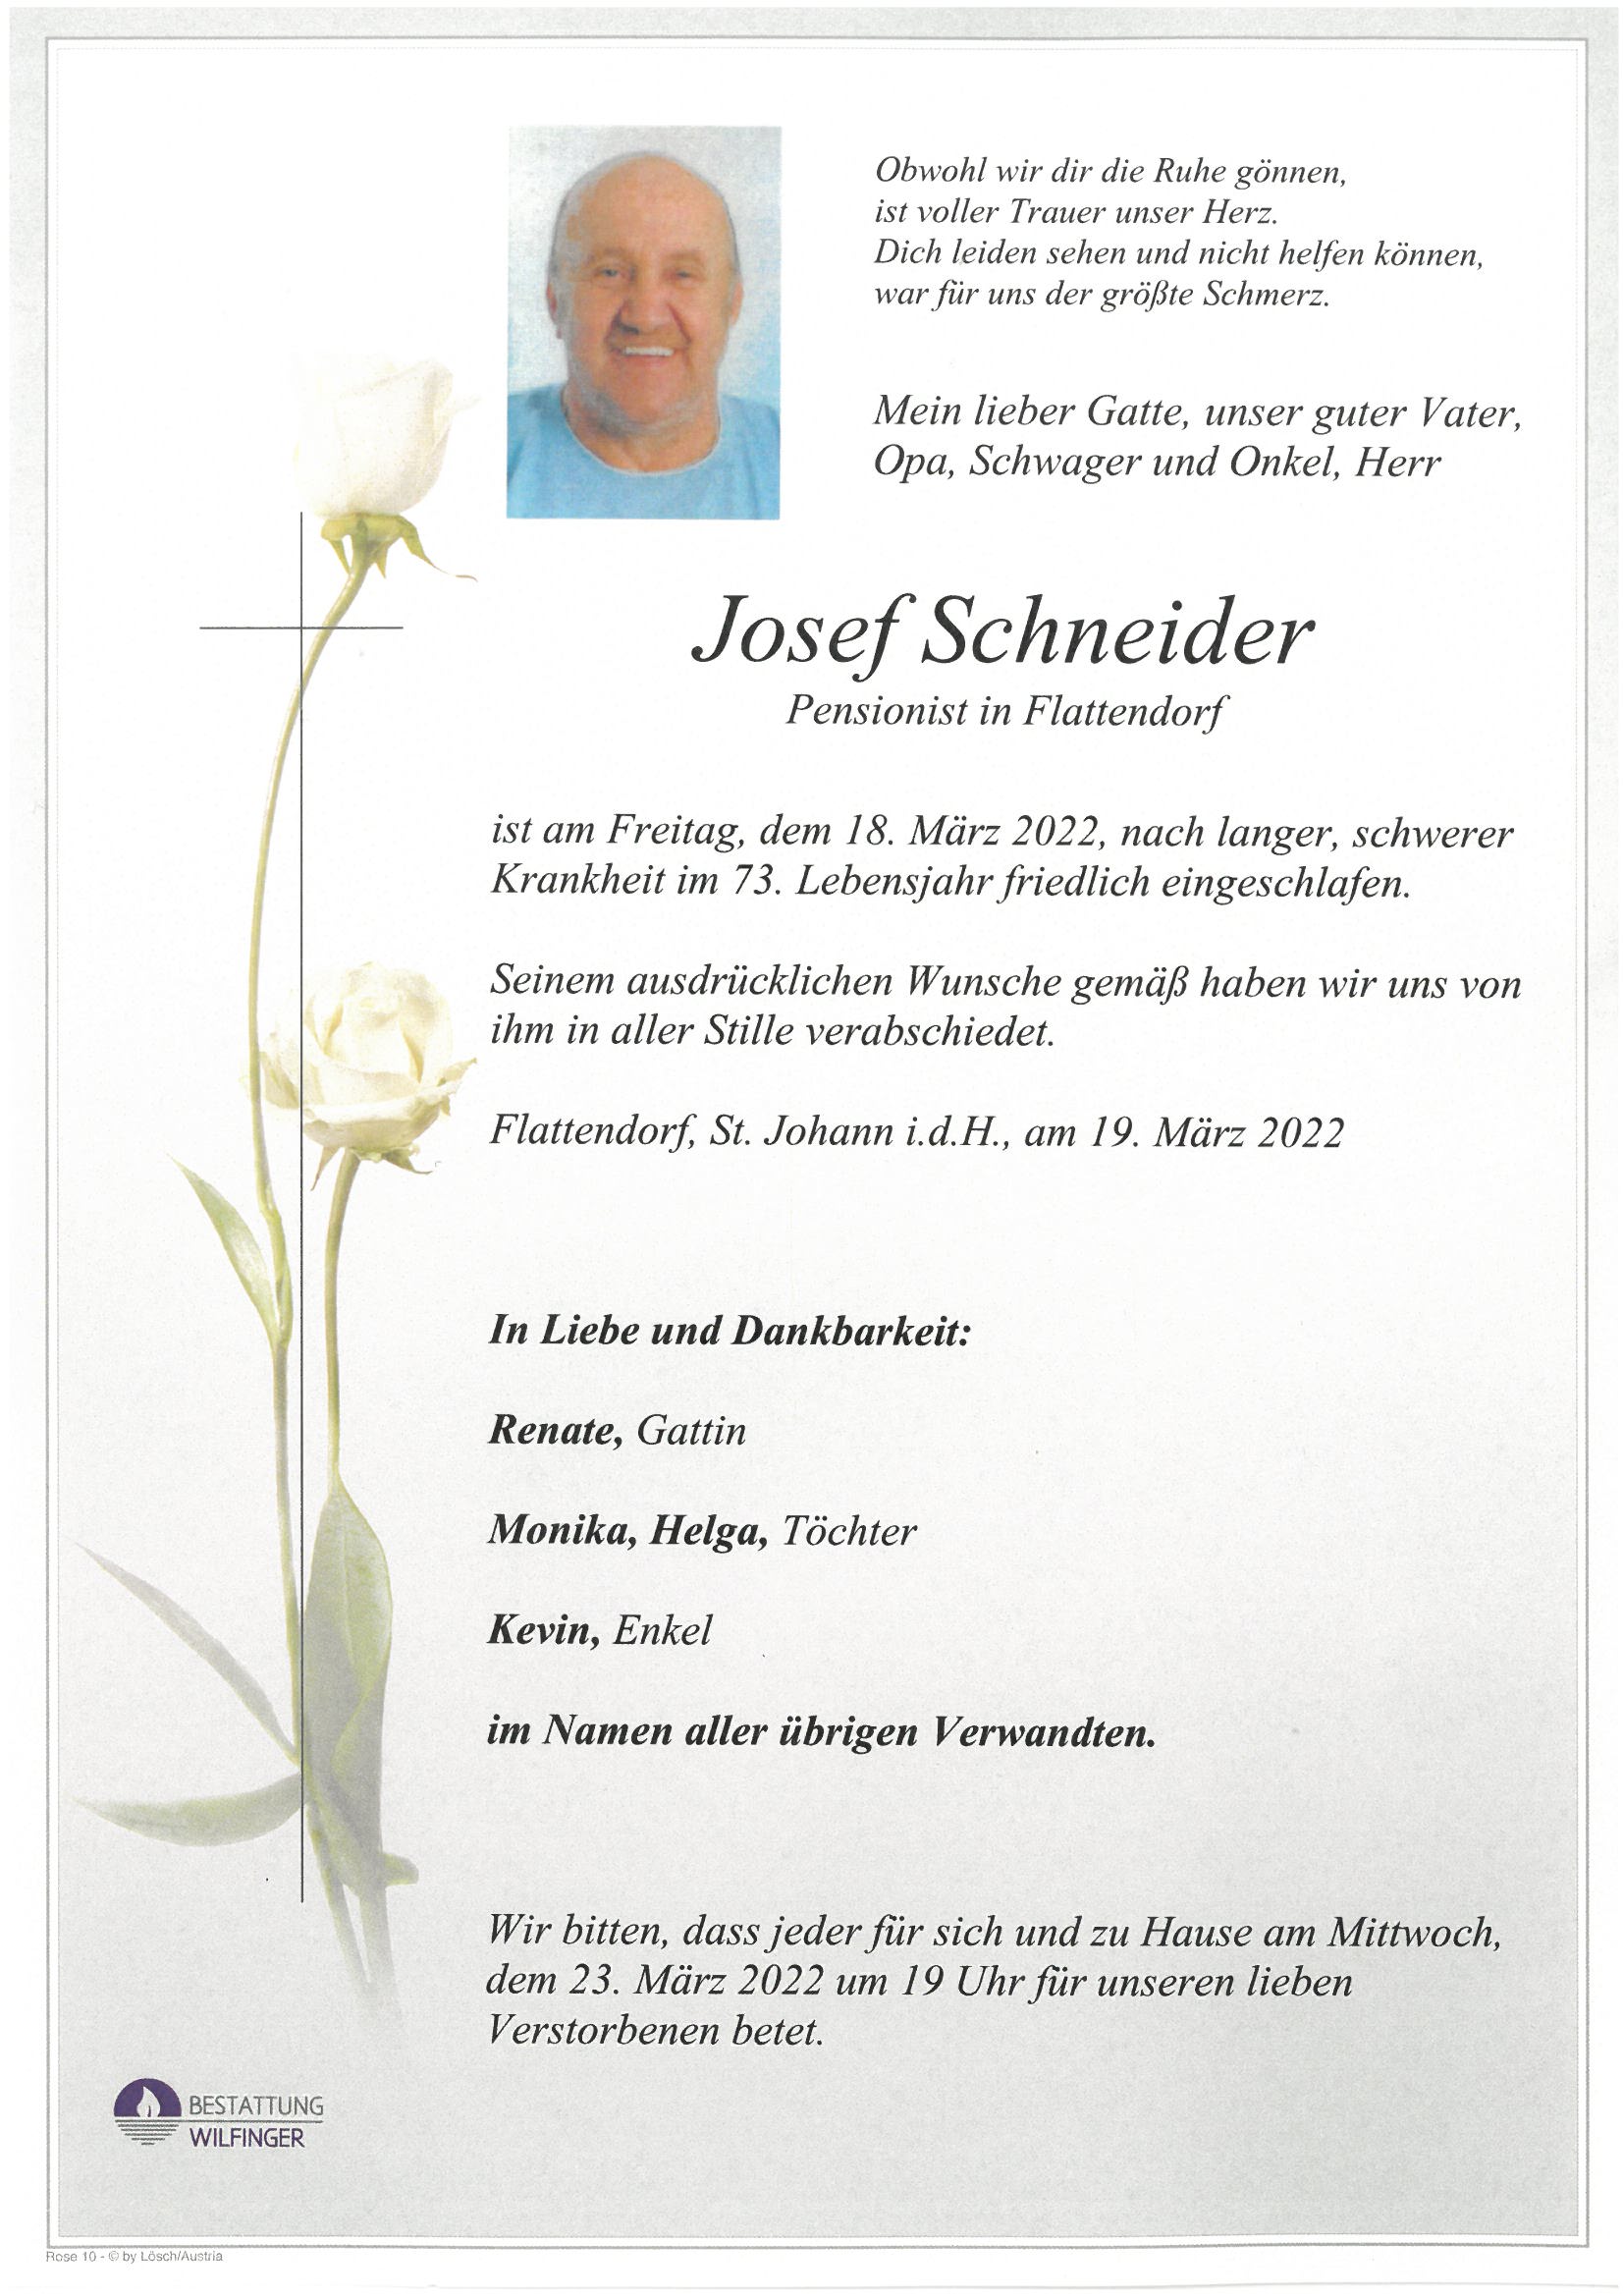 Josef Schneider, Flattendorf